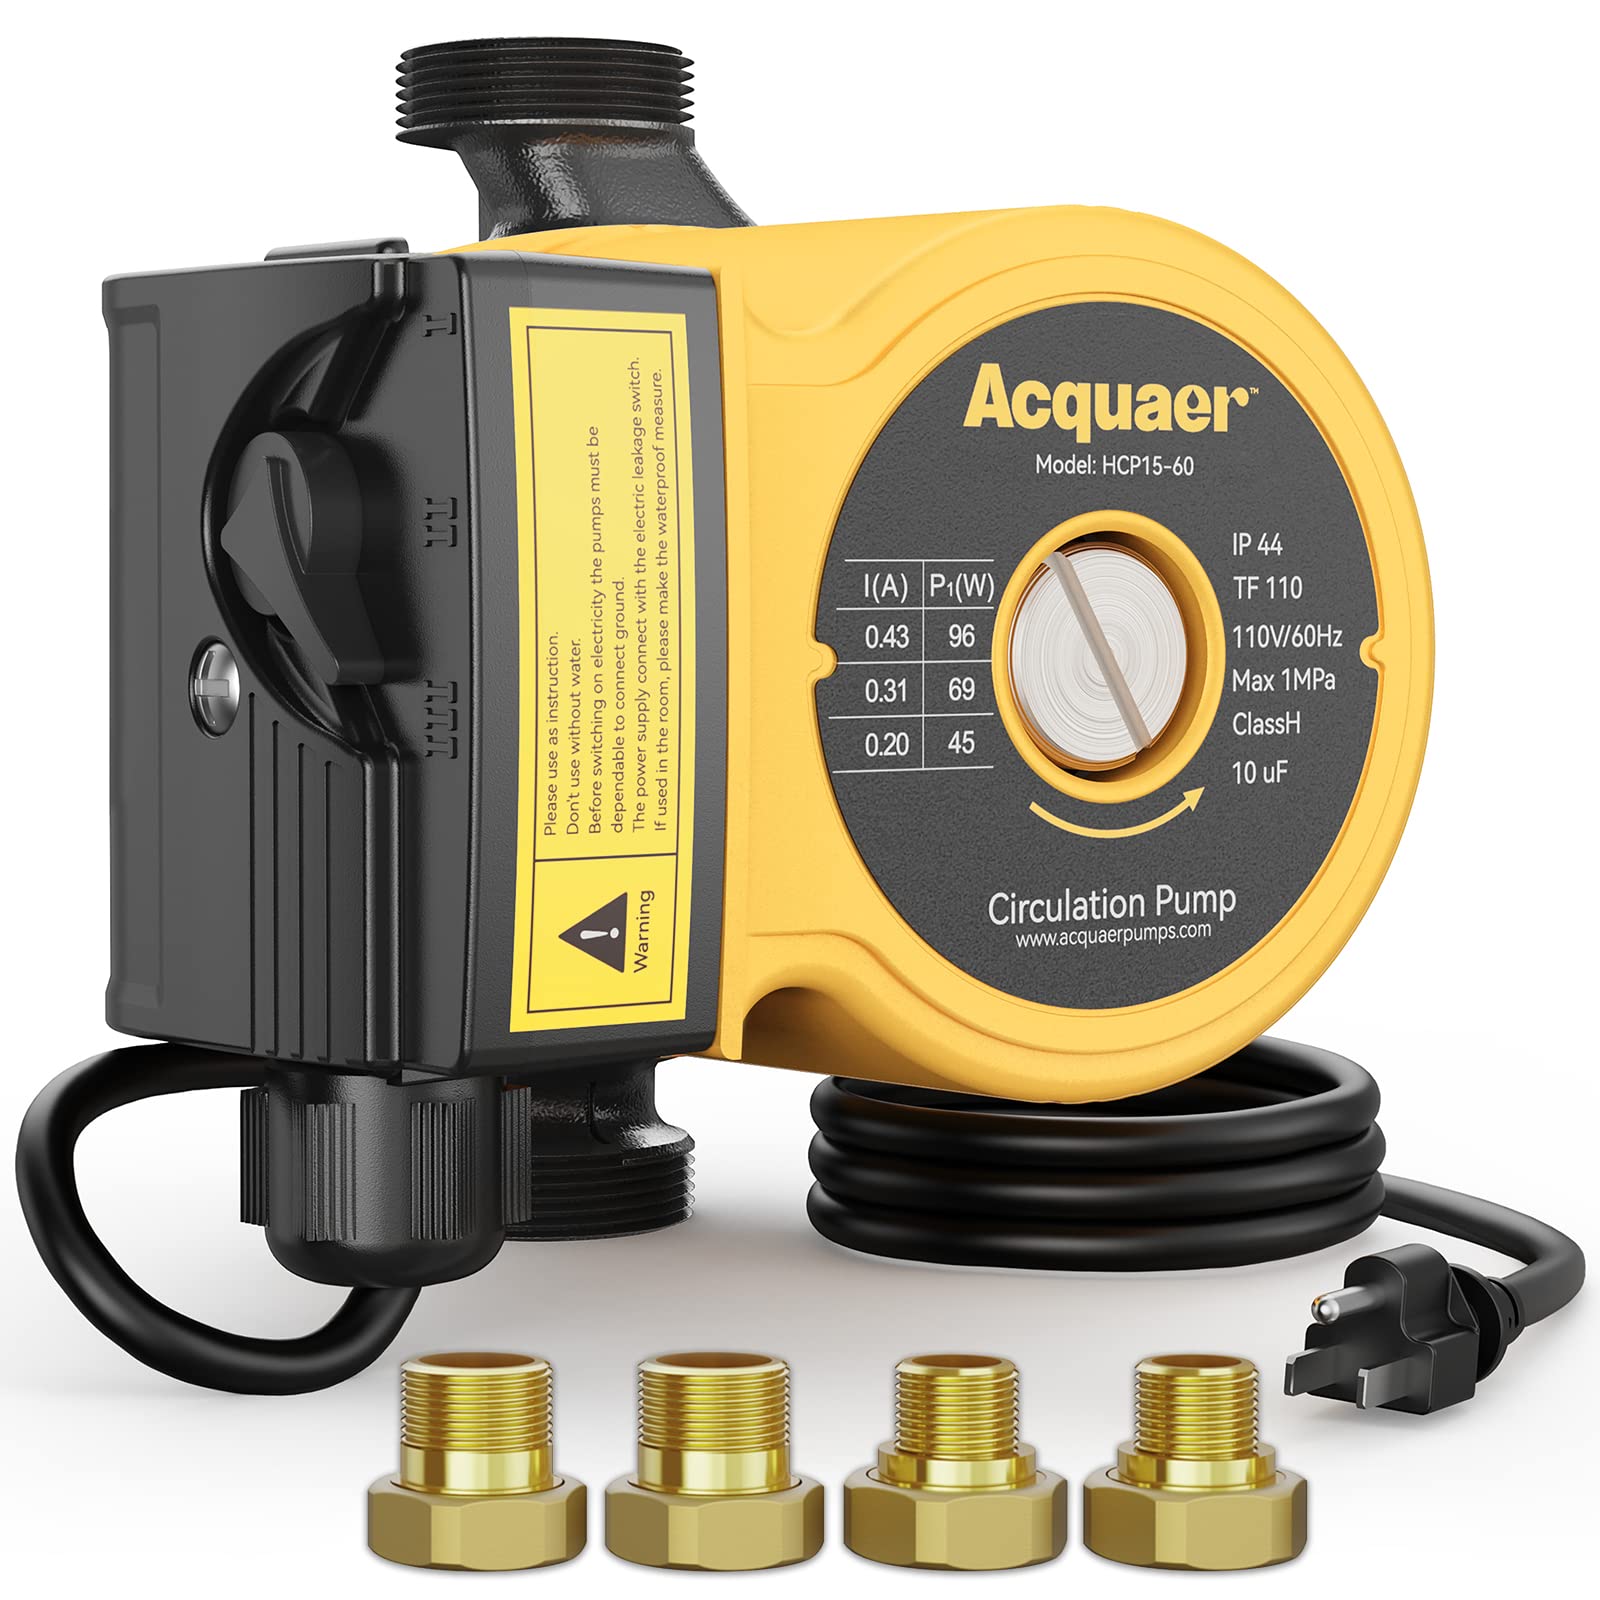 Acquaer 115V 3-Speed Hot Water Recirculating Pump, 11 GPM Manual Ⅱ - Acquaer